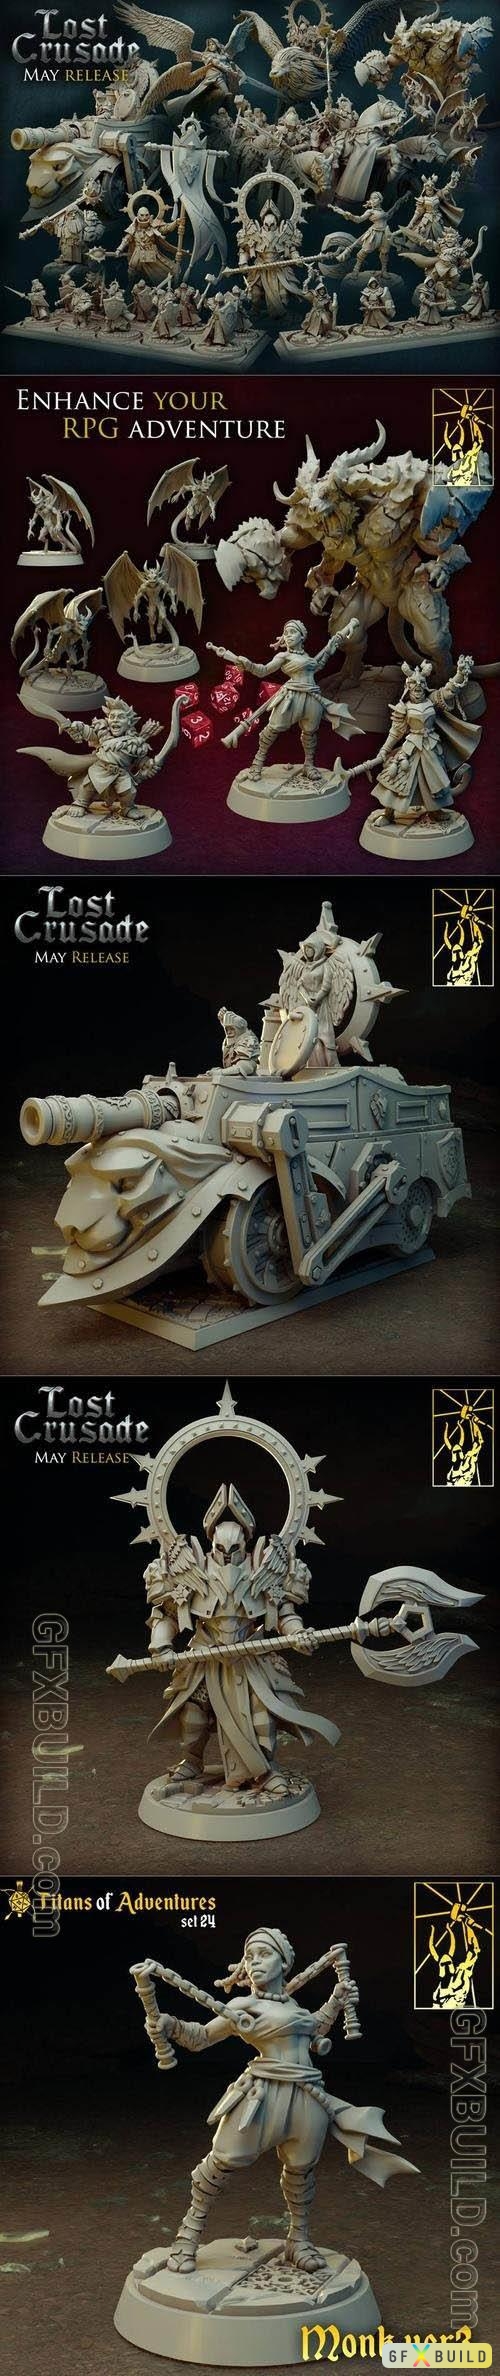 Titan Forge Miniatures - Lost Crusade May 2022 STL